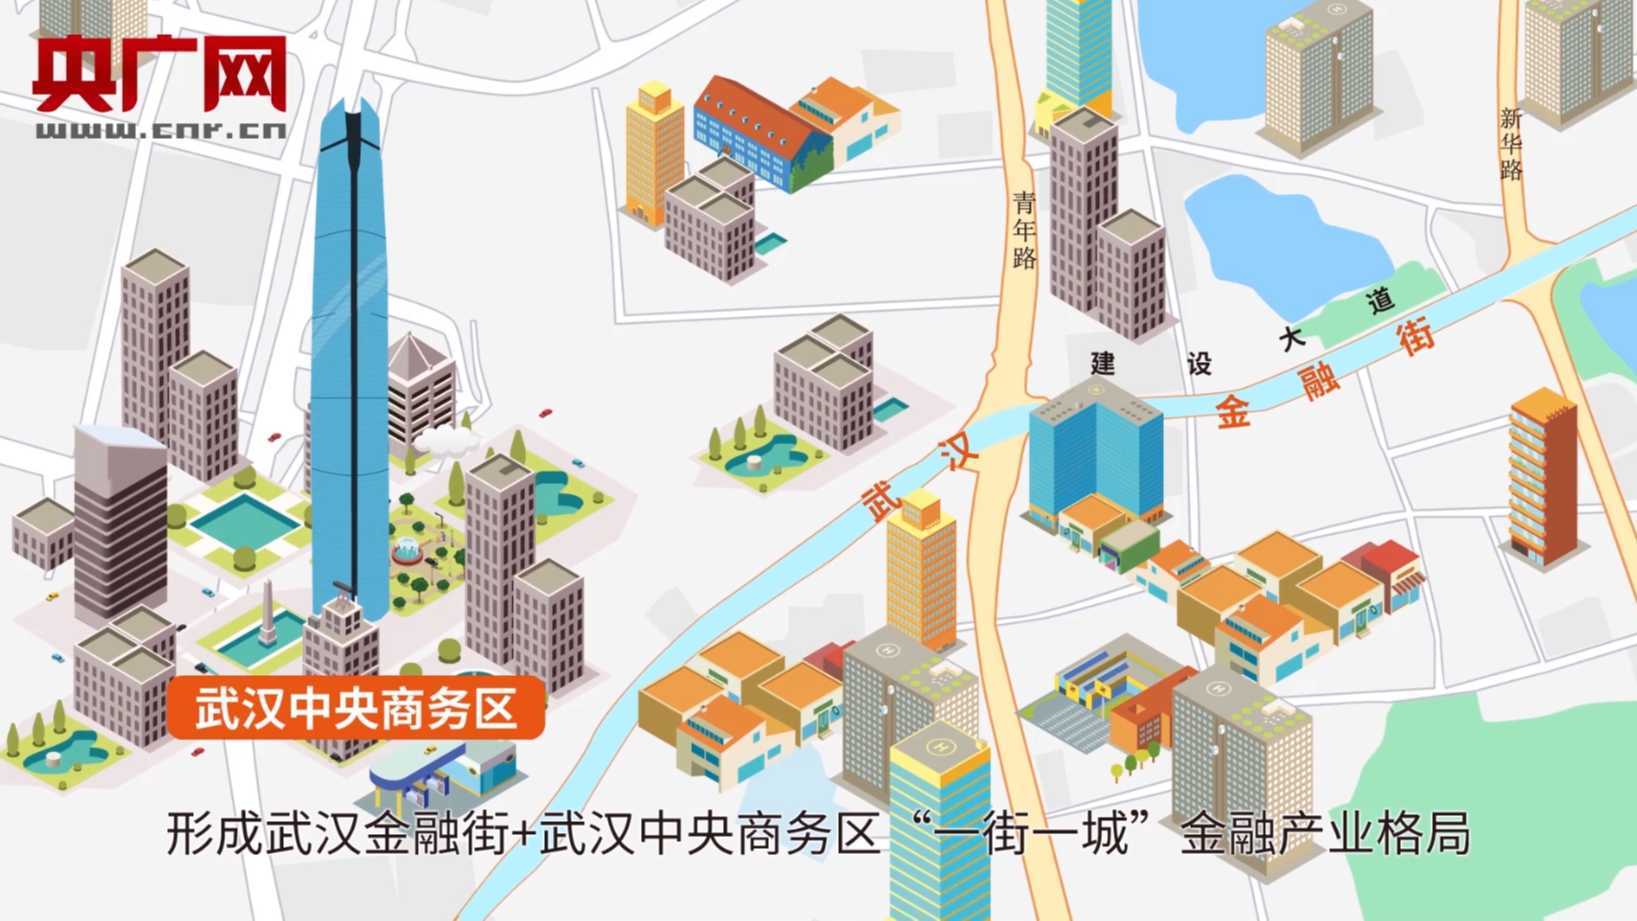 城市发展规划动画  汉江区产业园区布局介绍动画